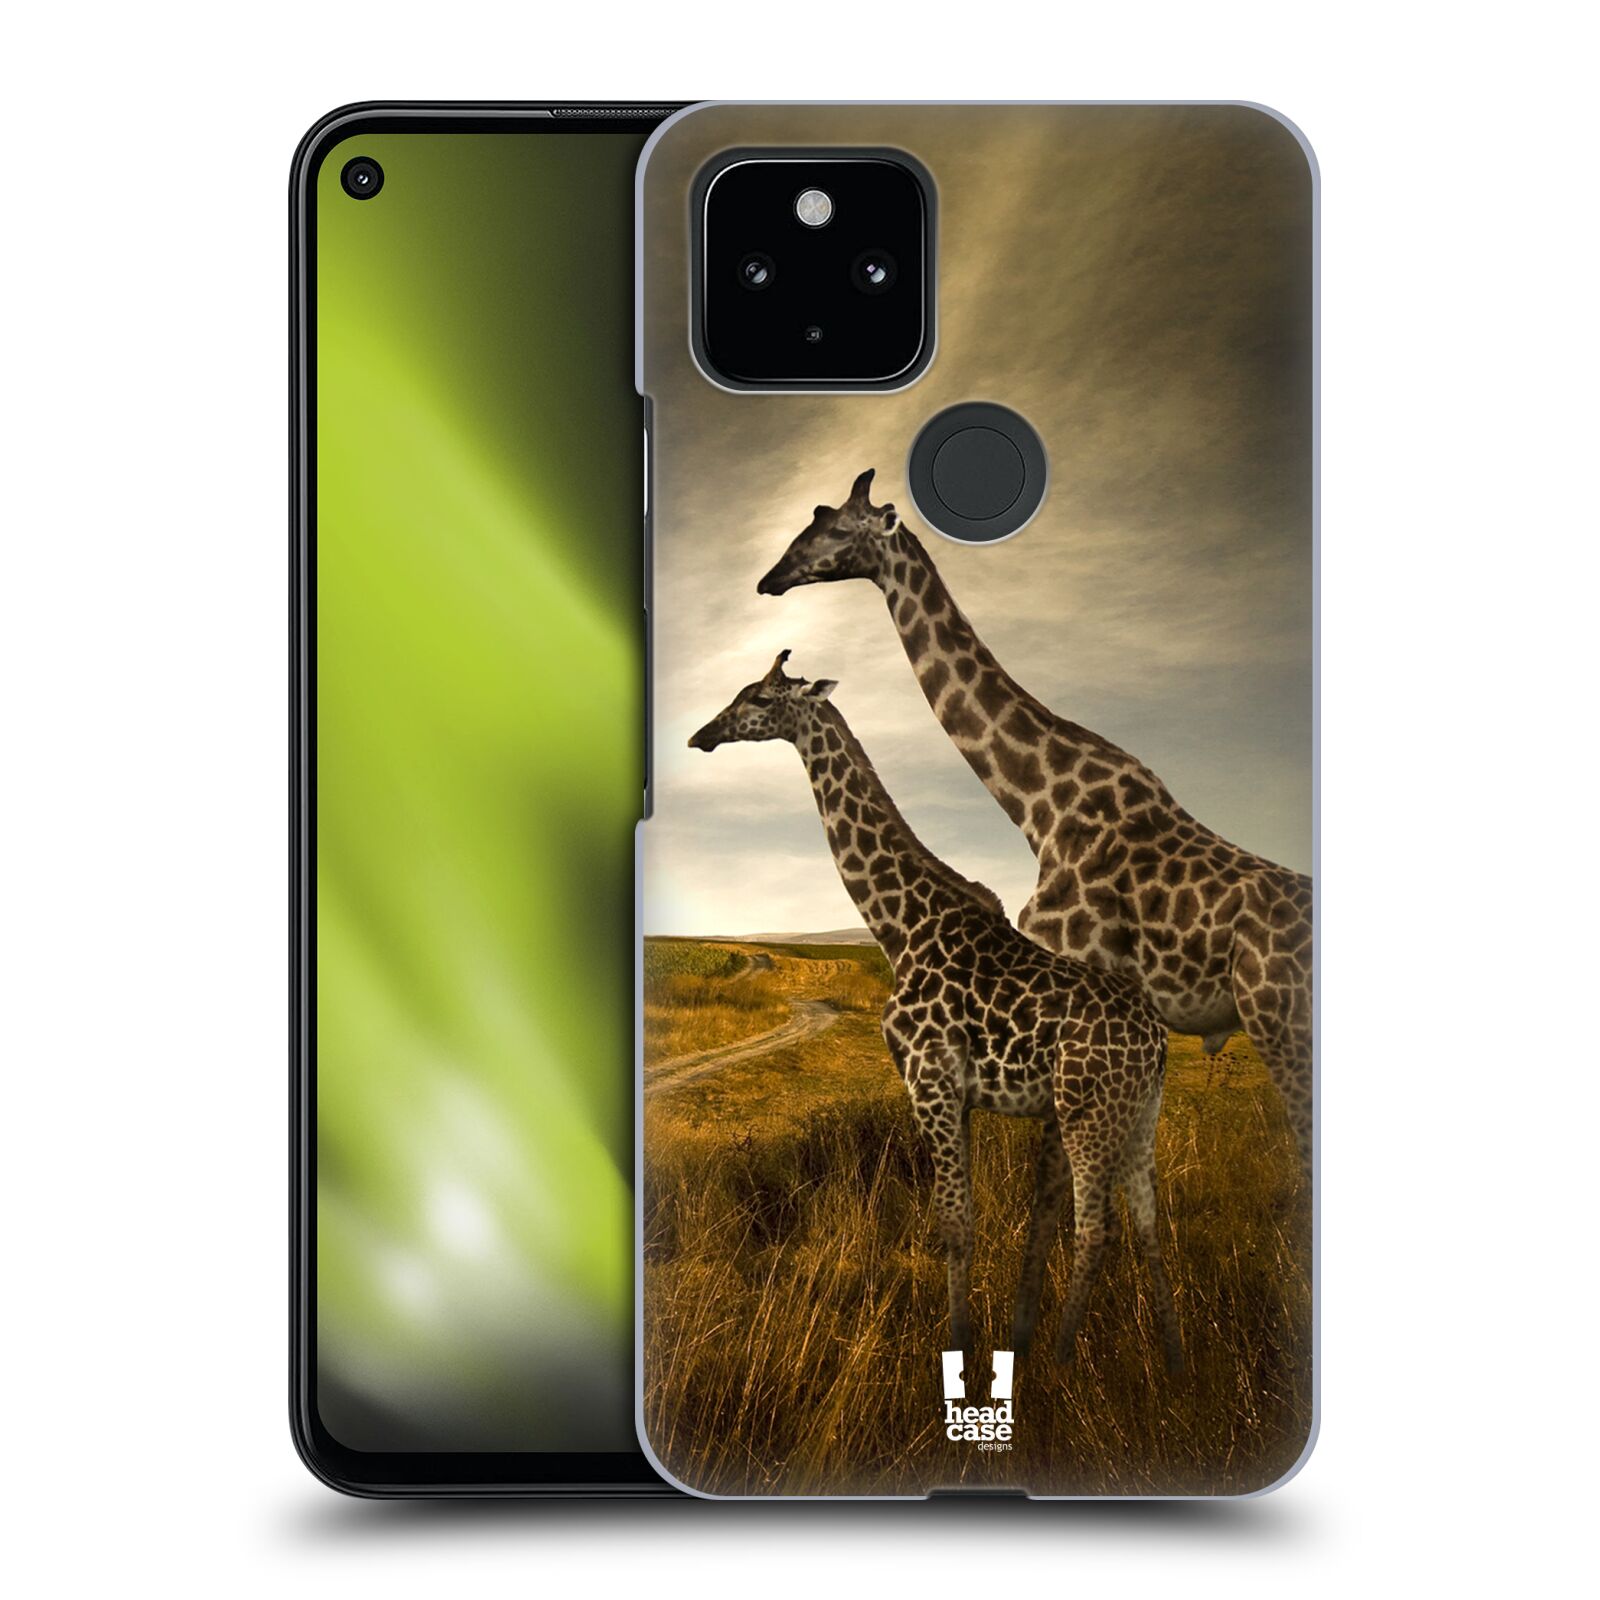 Zadní obal pro mobil Google Pixel 4a 5G - HEAD CASE - Svět zvířat žirafy